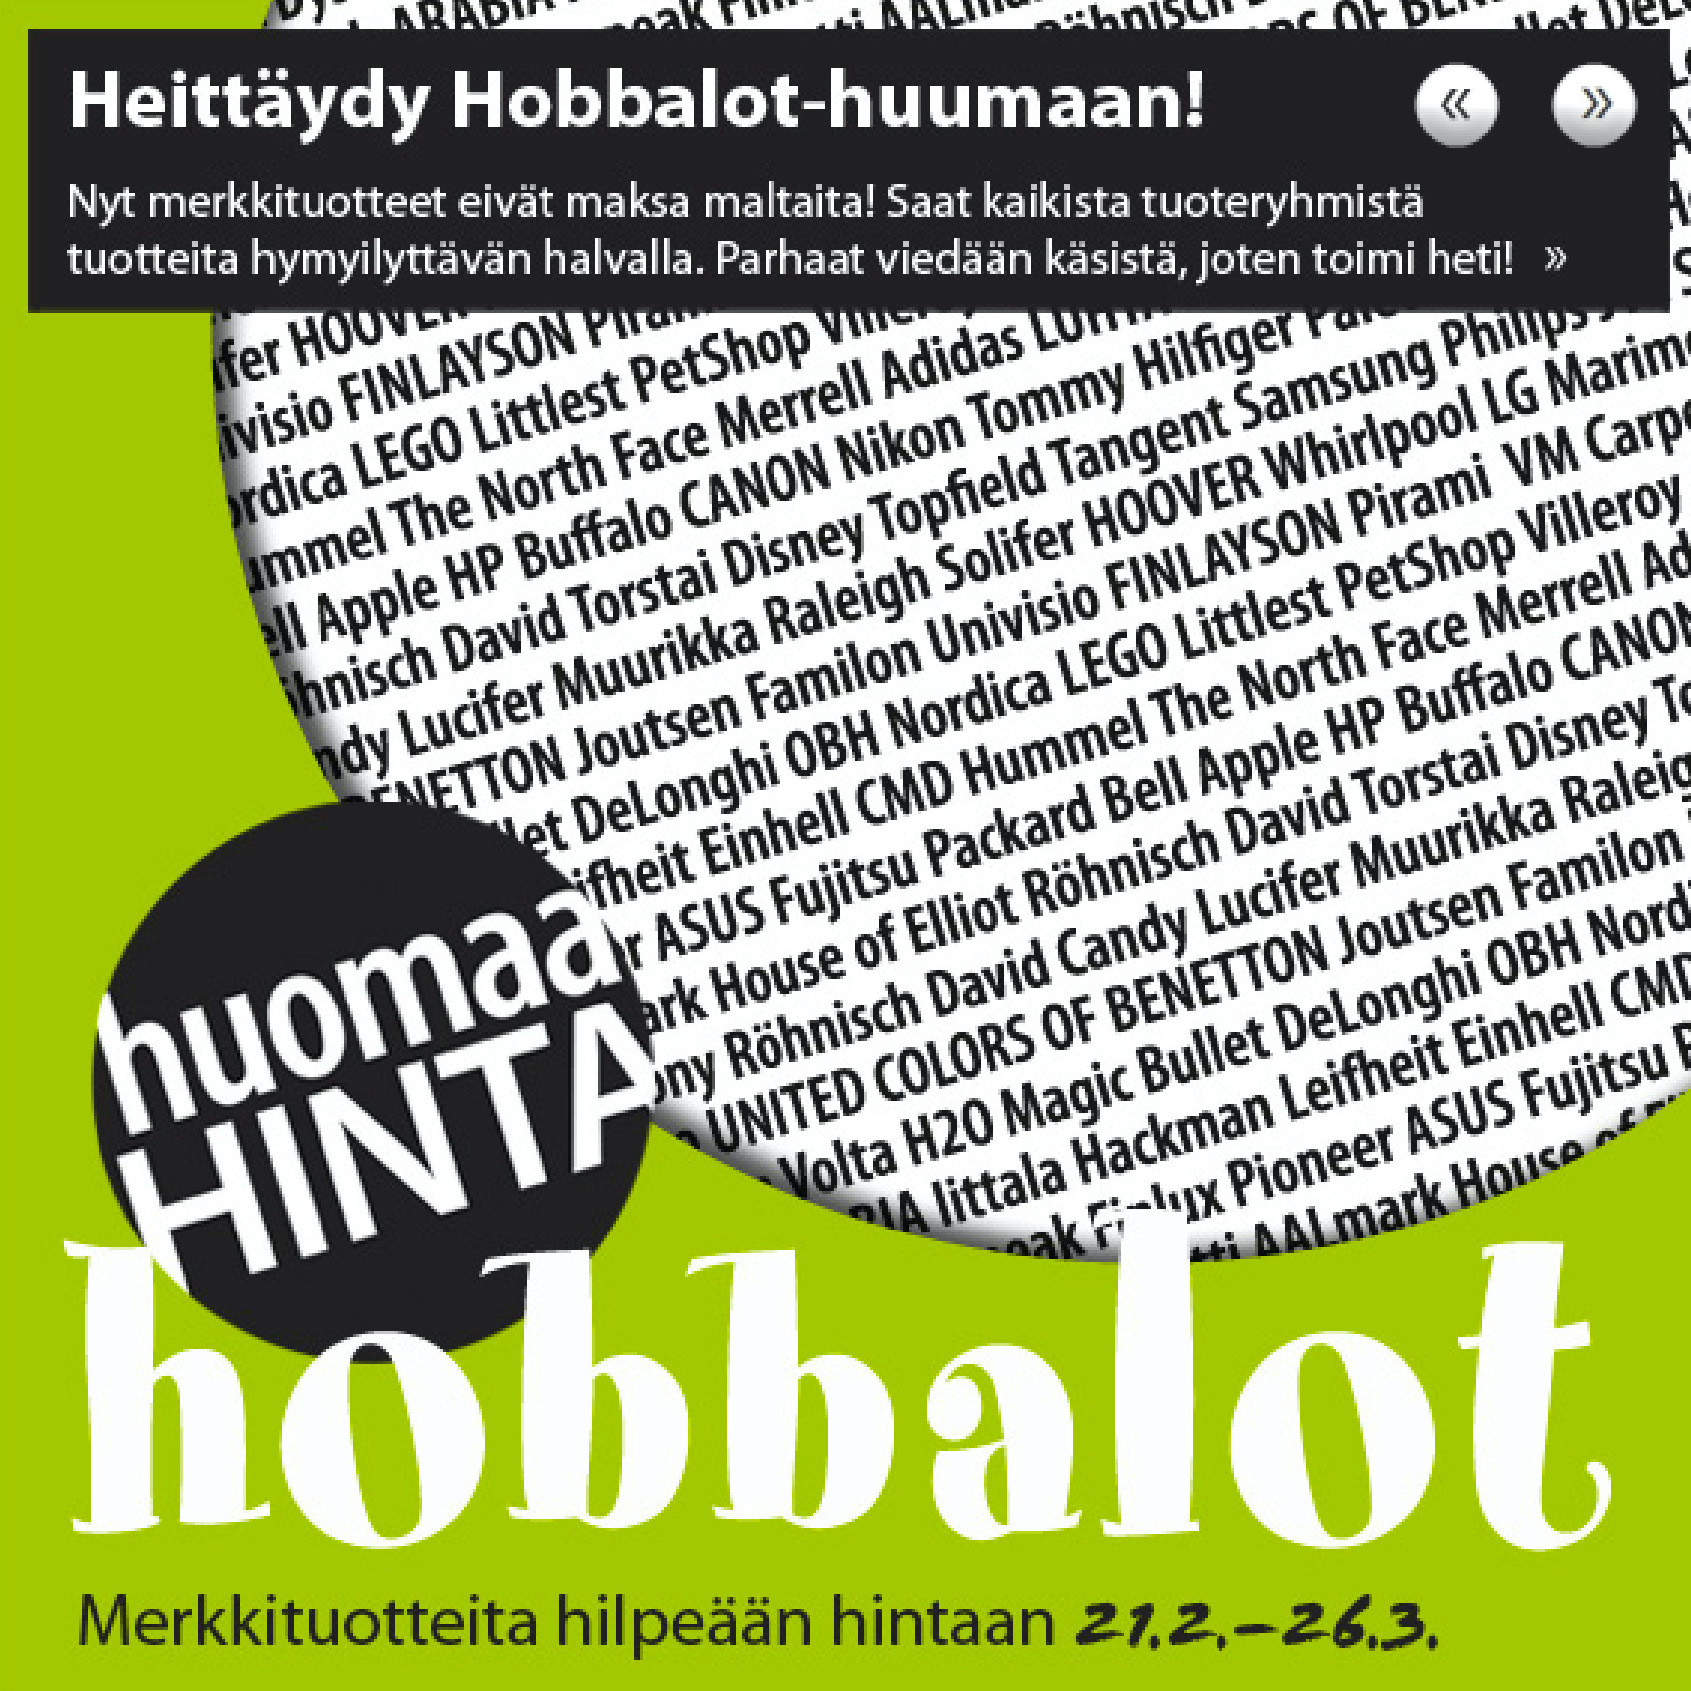 Hobby Hall Hobbalot kevät - Omakotivalkoinen alevinkki